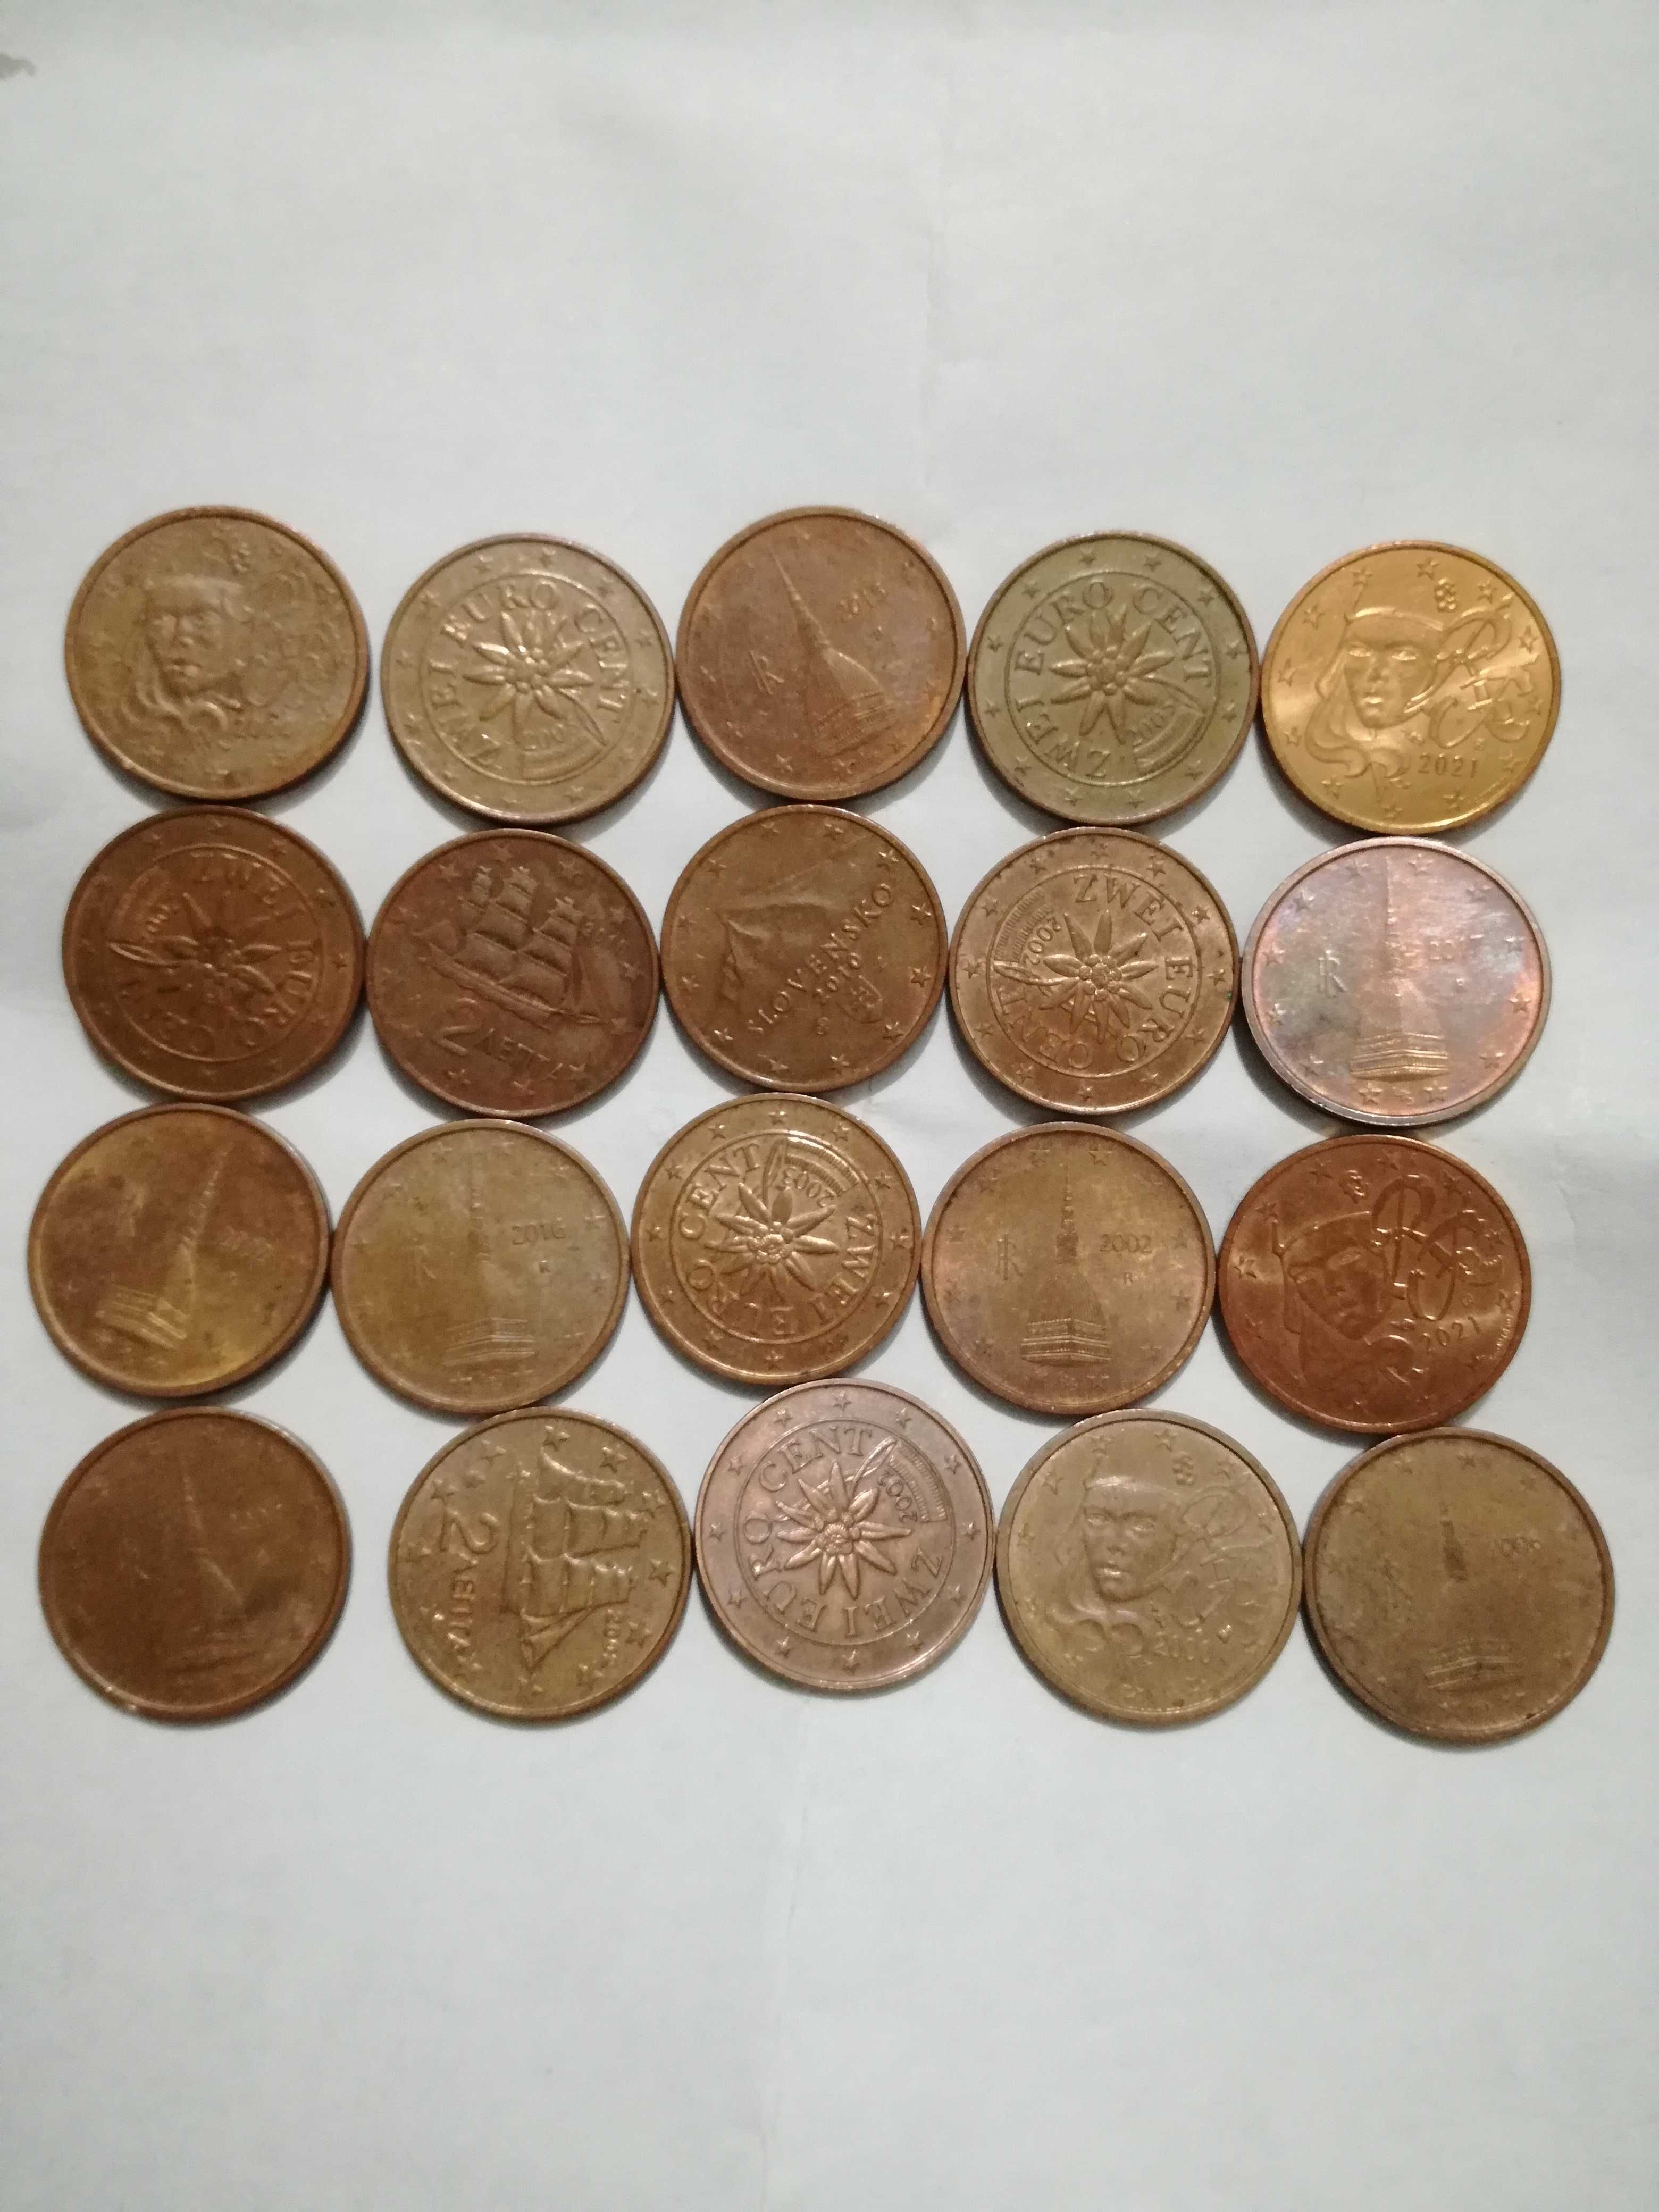 Vand monede 2 euro centi rare de colectie